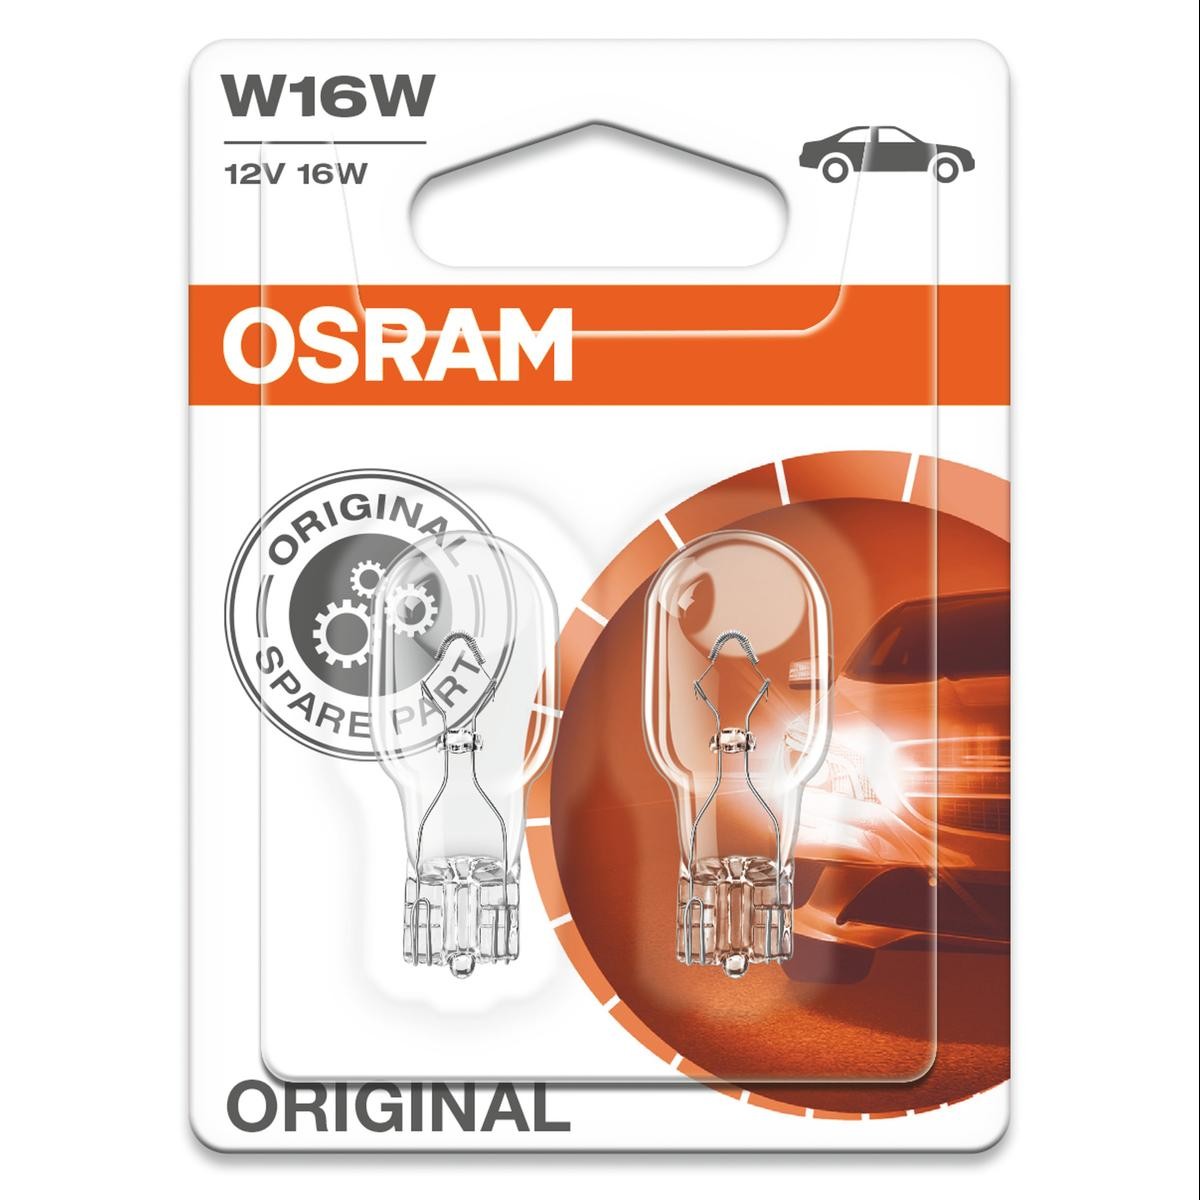 921-02B OSRAM ORIGINAL LINE W16W Blinkerbirne 12V 16W, W16W